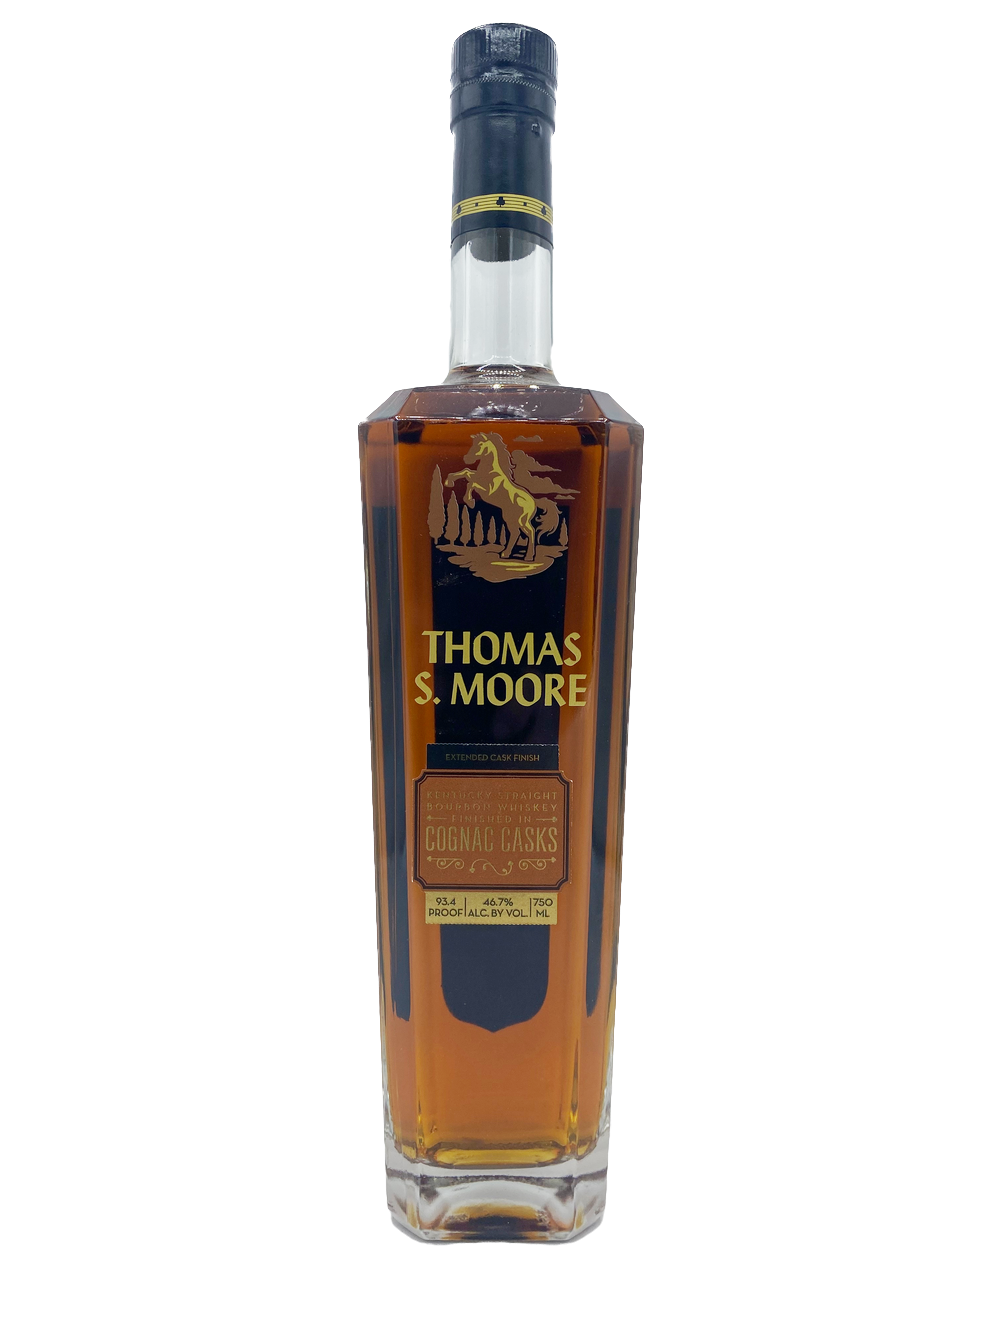 Thomas S. Moore Cognac Cask Finish Bourbon 750ml